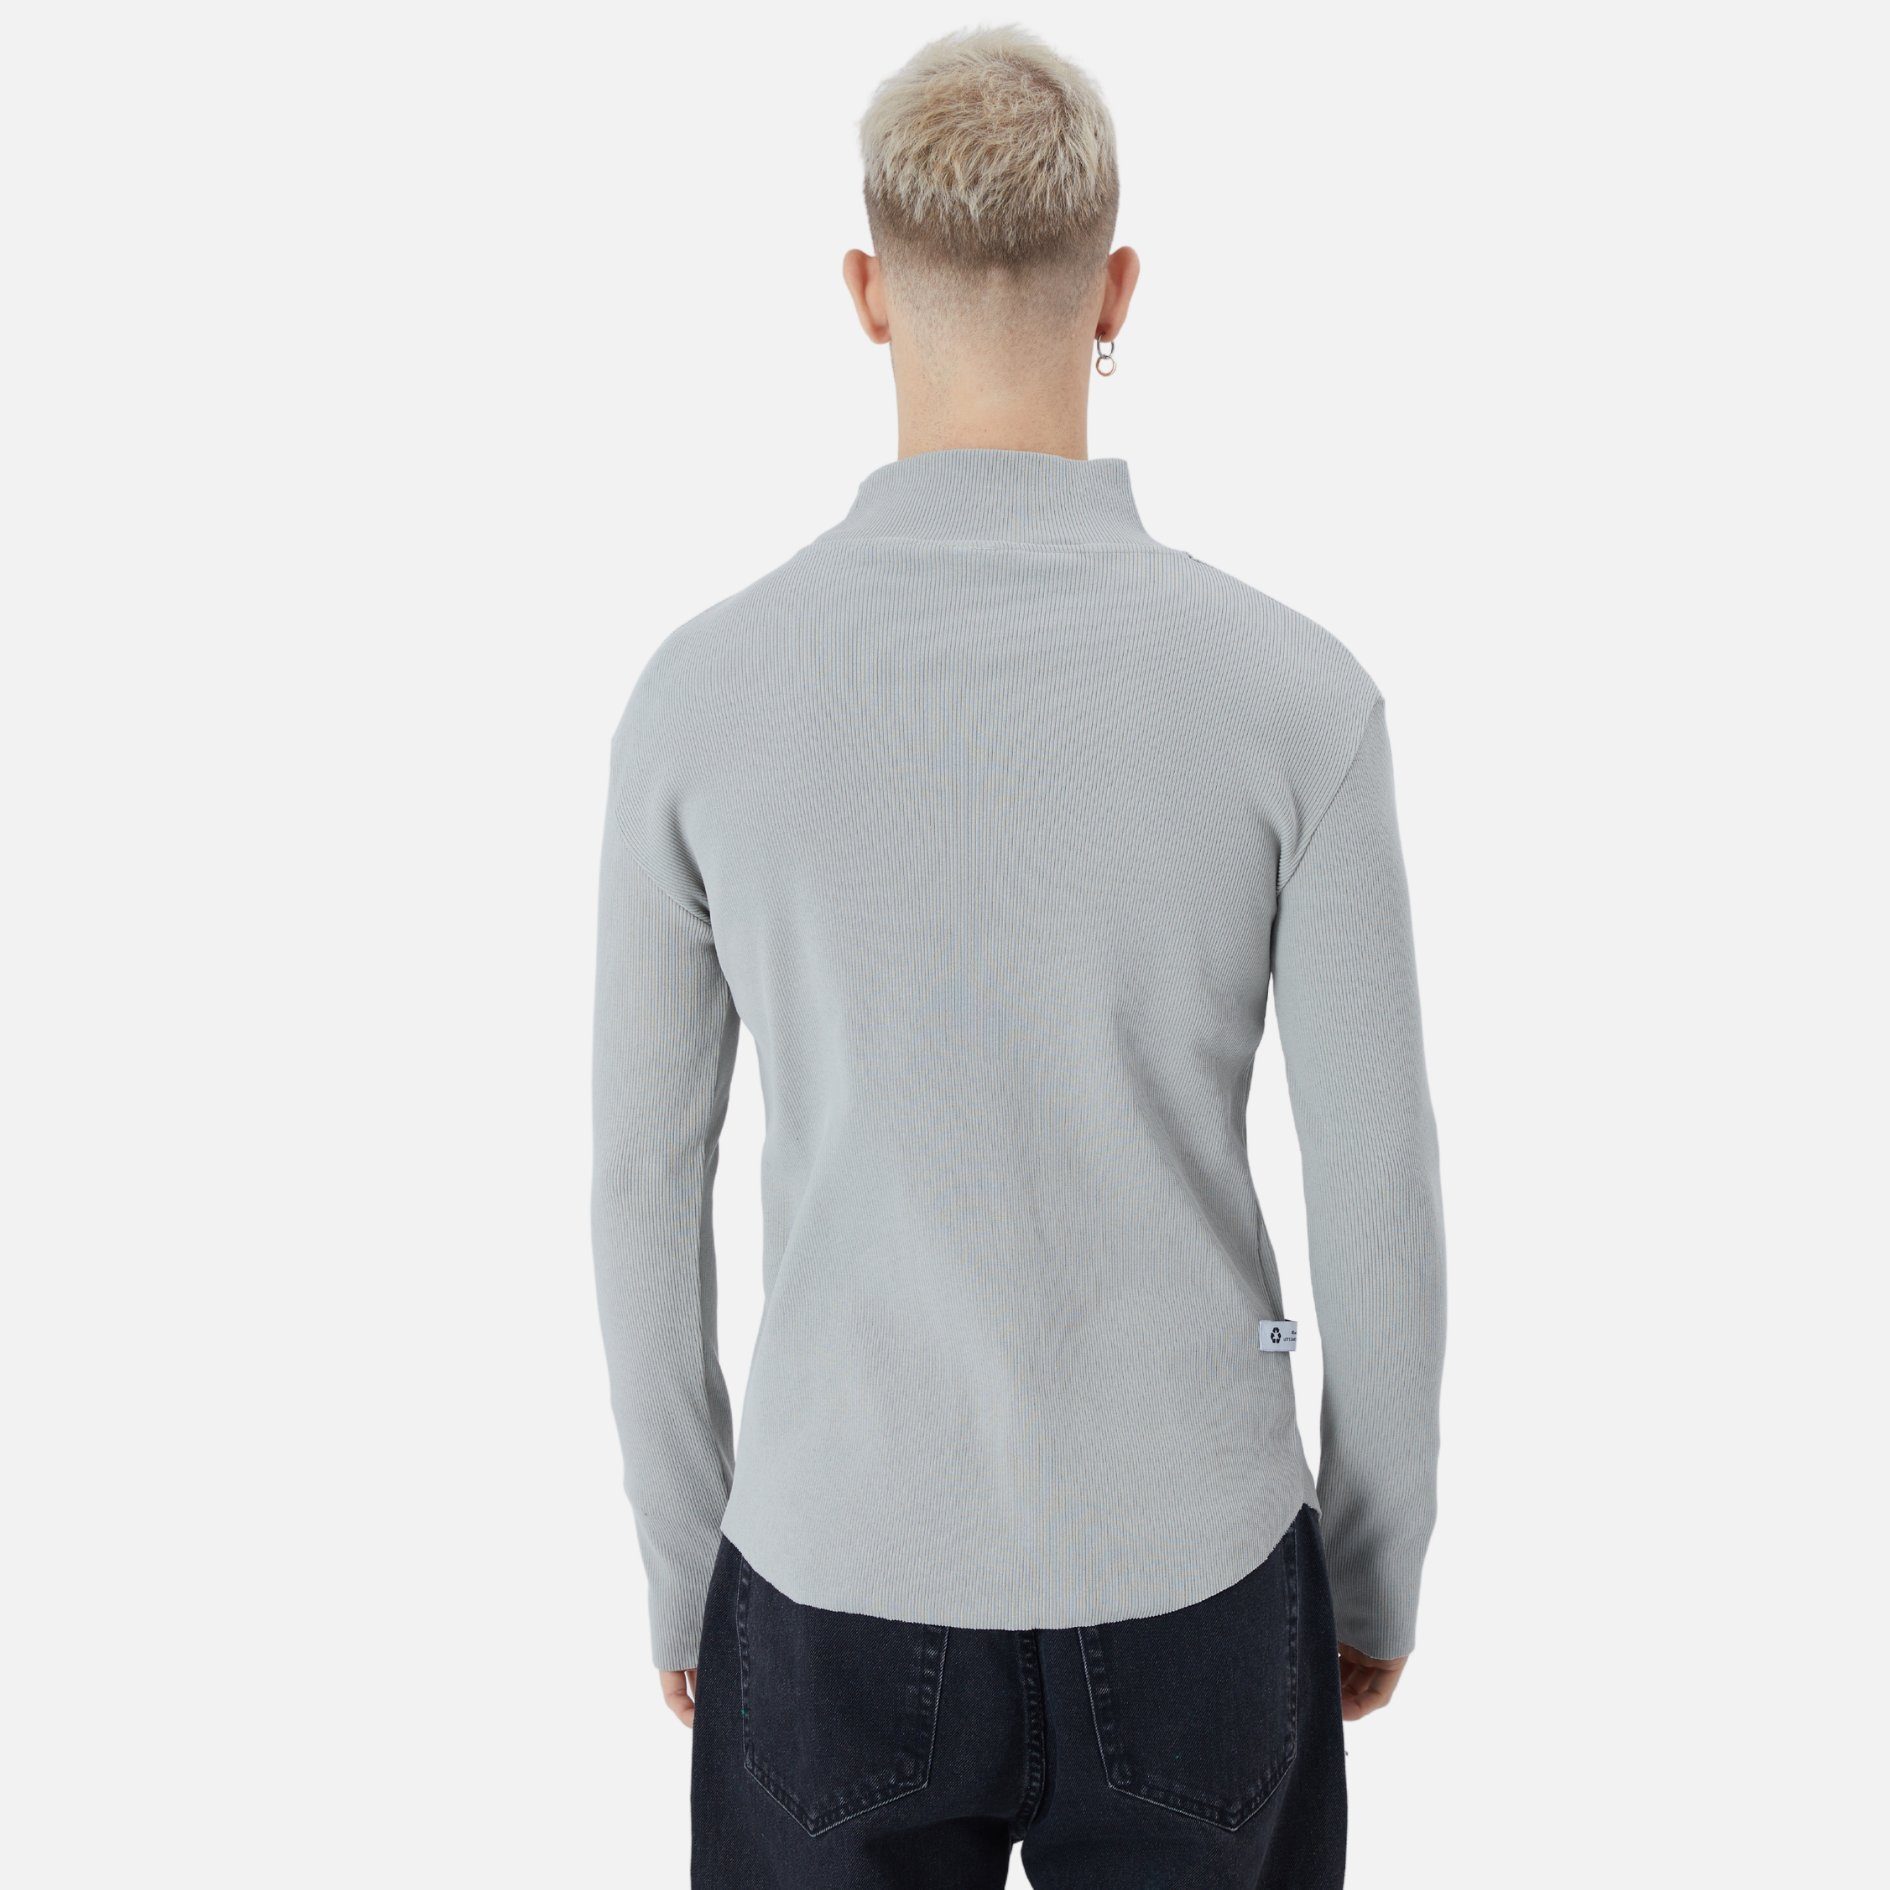 Casuals Pullover Rundhals Sweatshirt Sweatshirt Herren COFI Regular Grau Fit